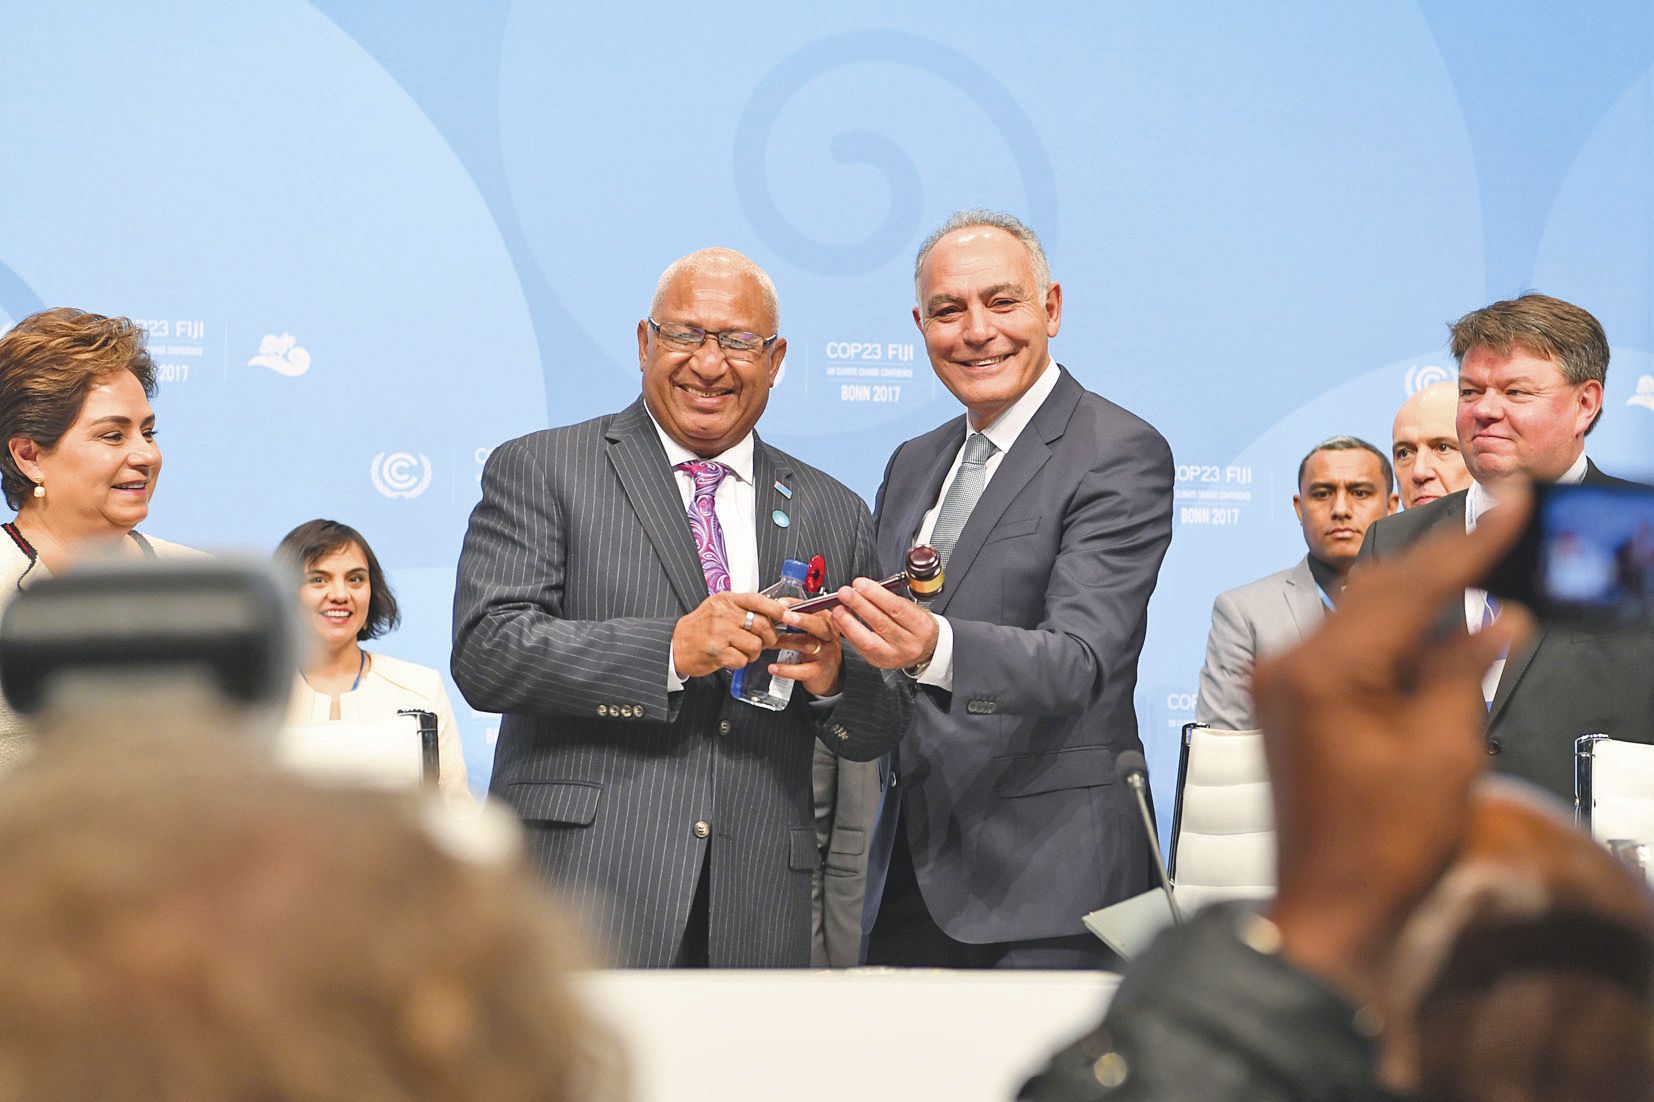 M. Bainimarama reçoit le marteau du président des mains de son prédécesseur, le Marocain Salaheddine Mezouar.